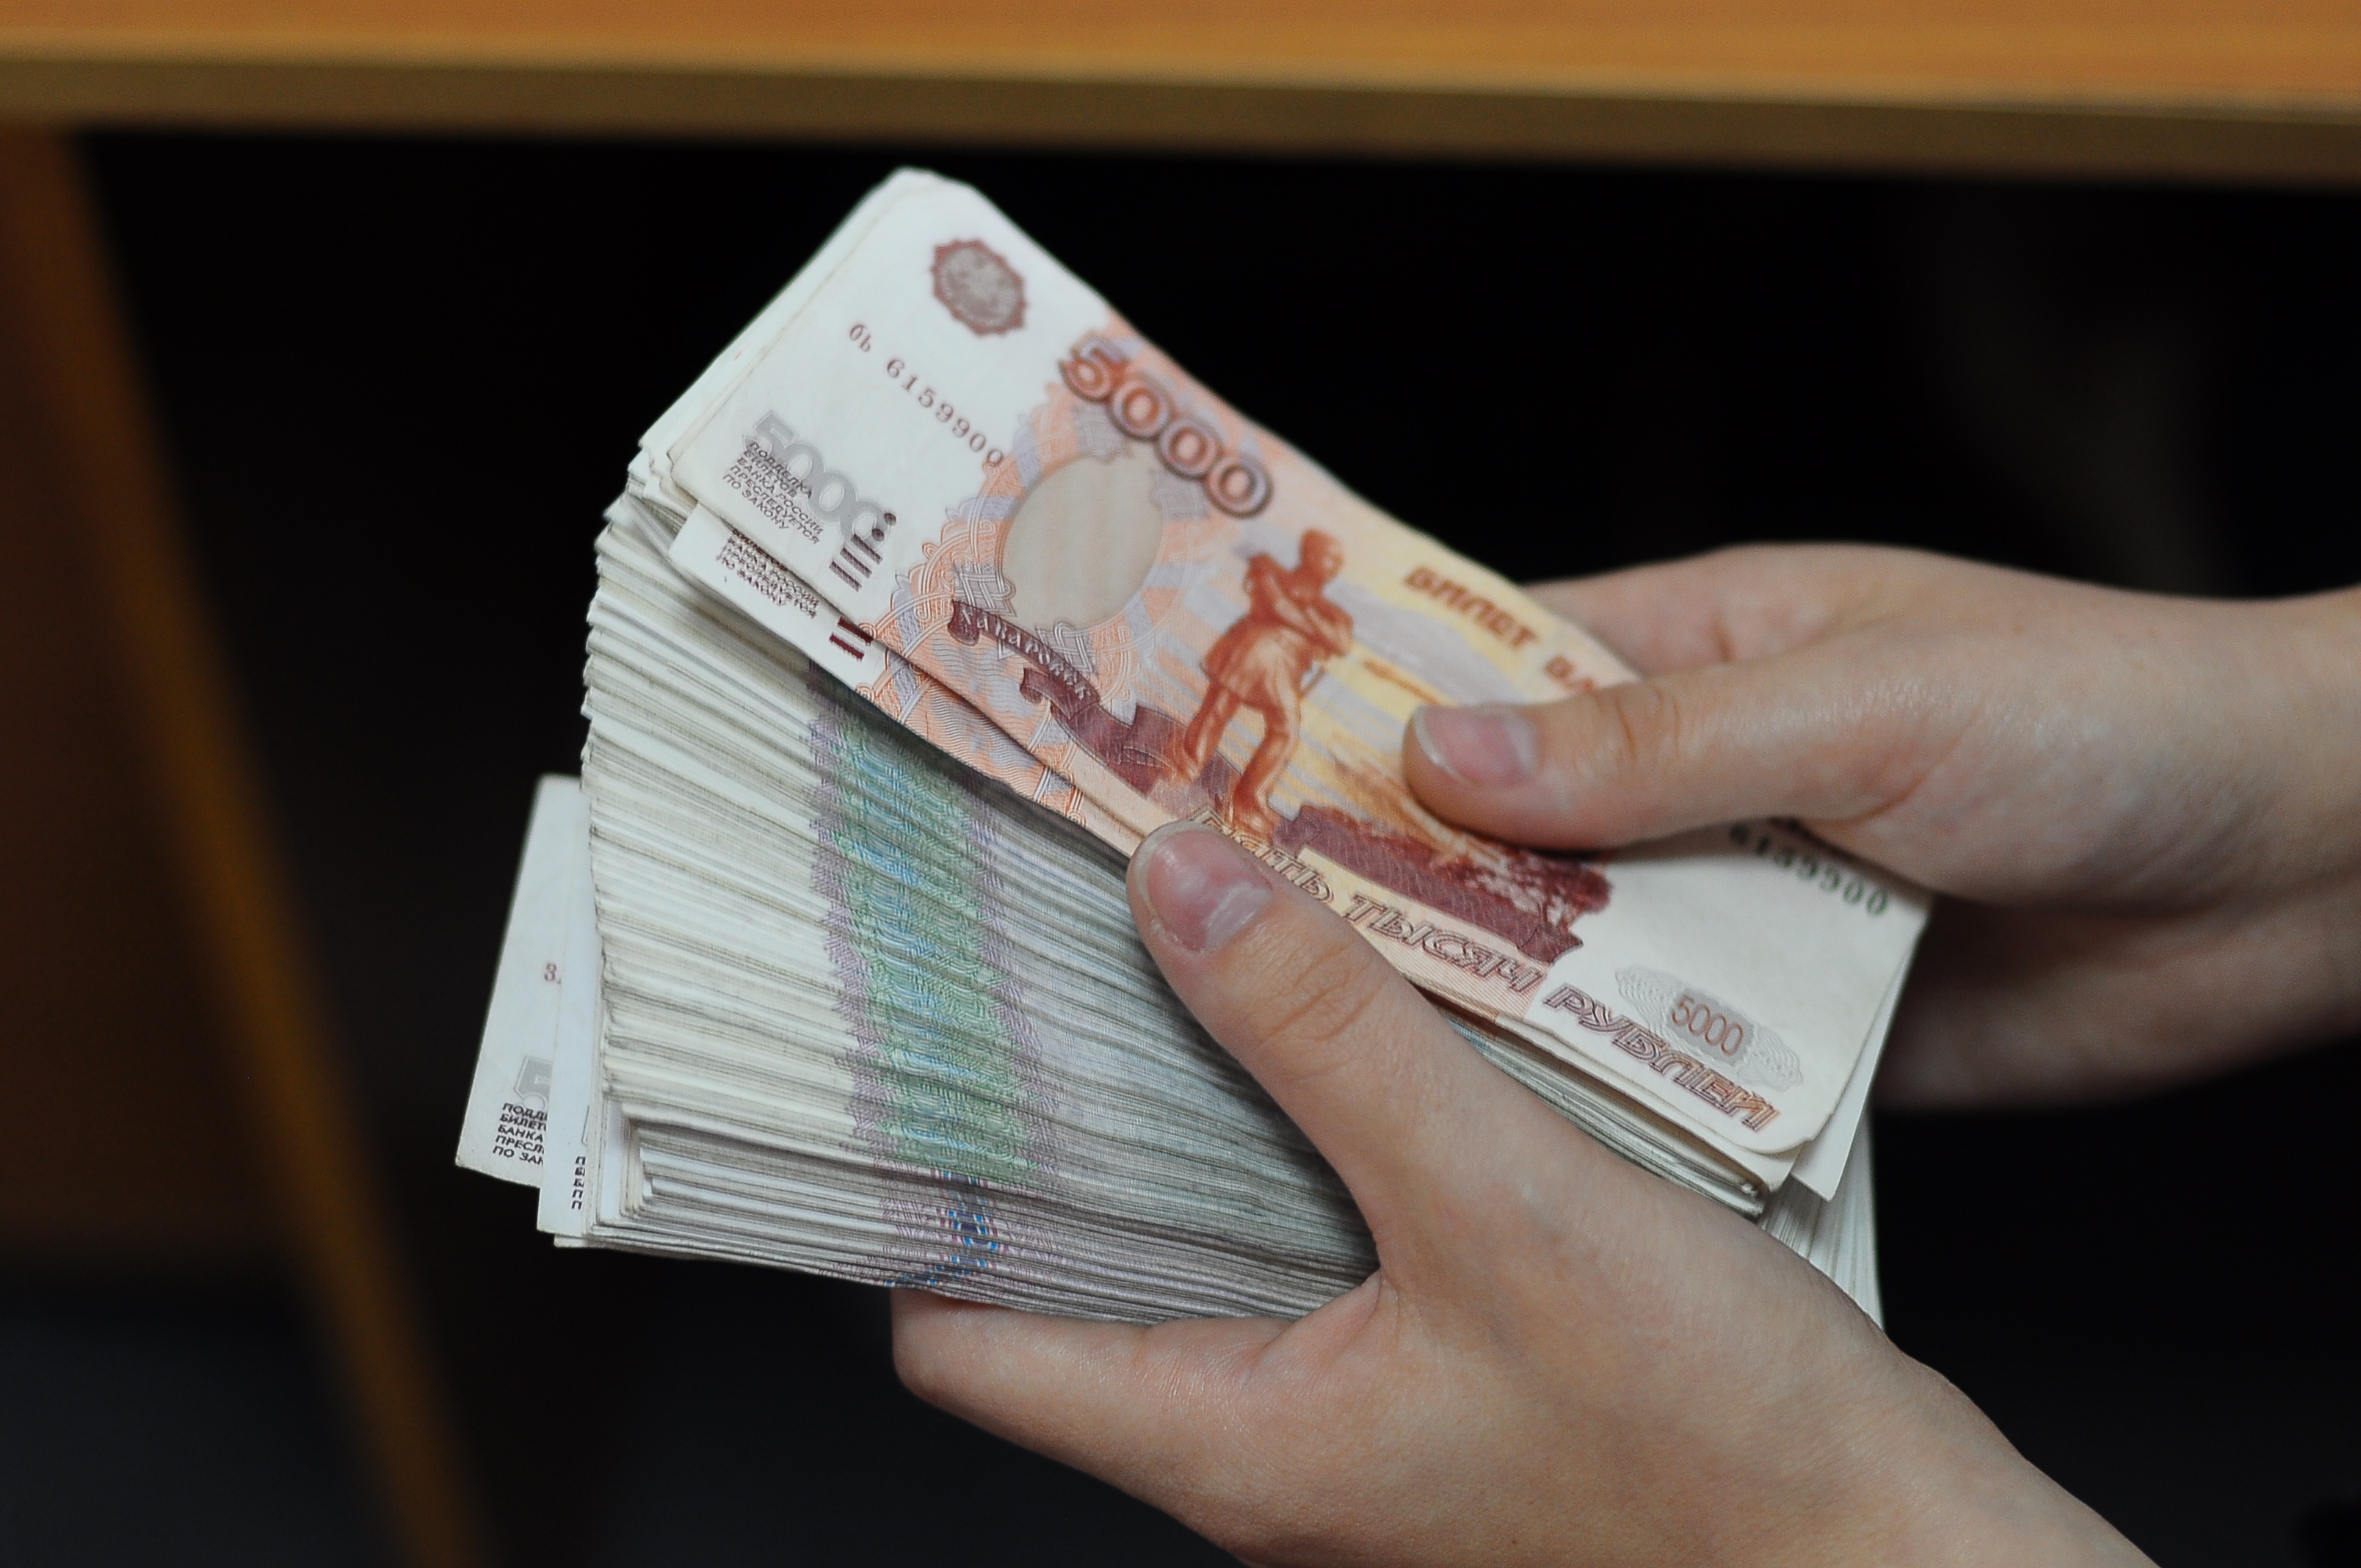 Кредит 1 500 000 рублей. Деньги в руках. Пачка денег в руках. Рубли в руках. Много рублей в руках.